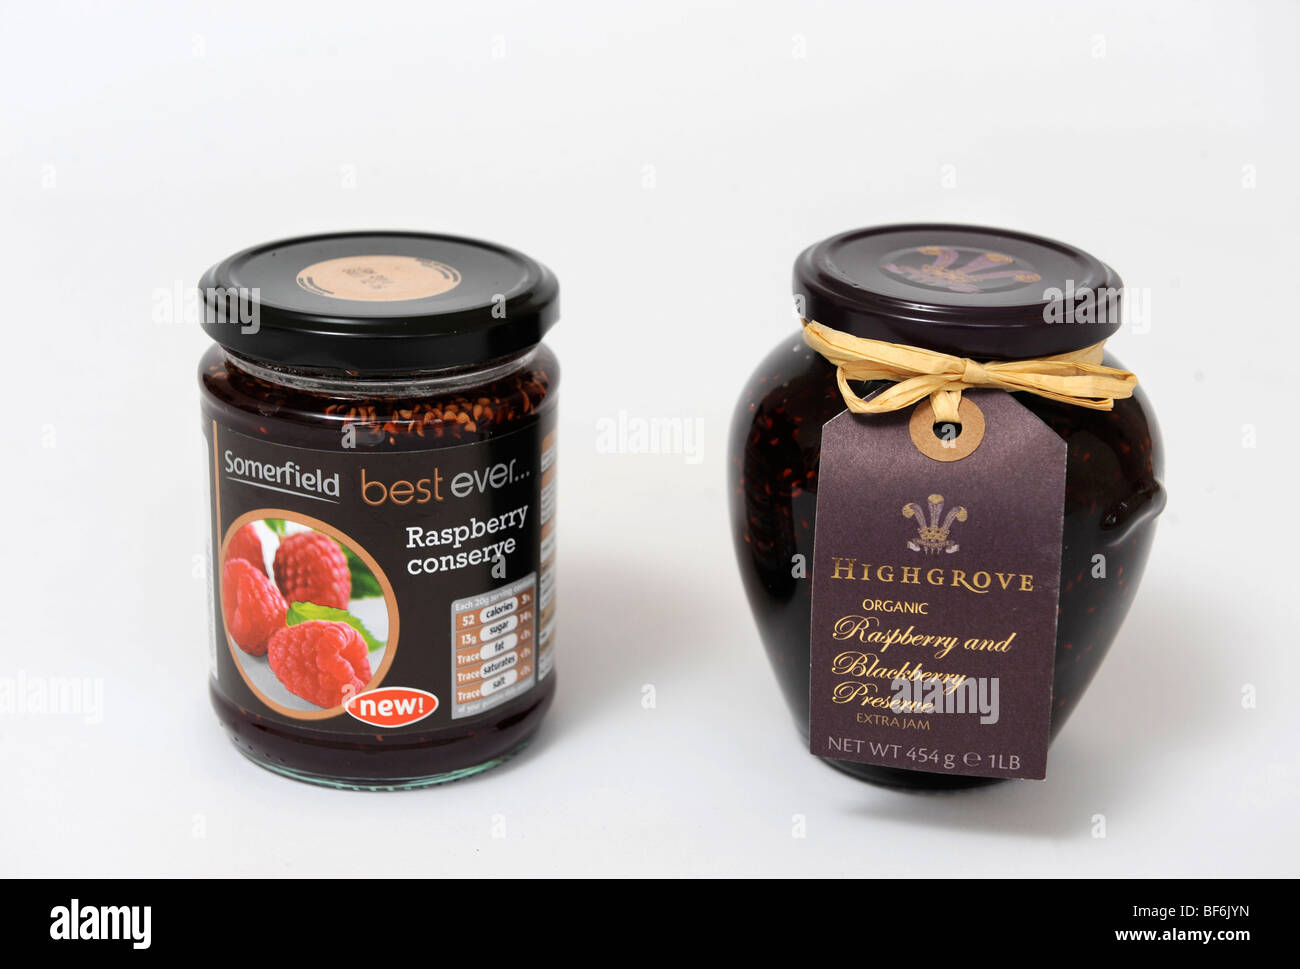 Esempi alternativi di simili confettura di frutta Lampone prodotti risparmiare da Somerfield supermercato (sinistra) e lampone preservare Foto Stock